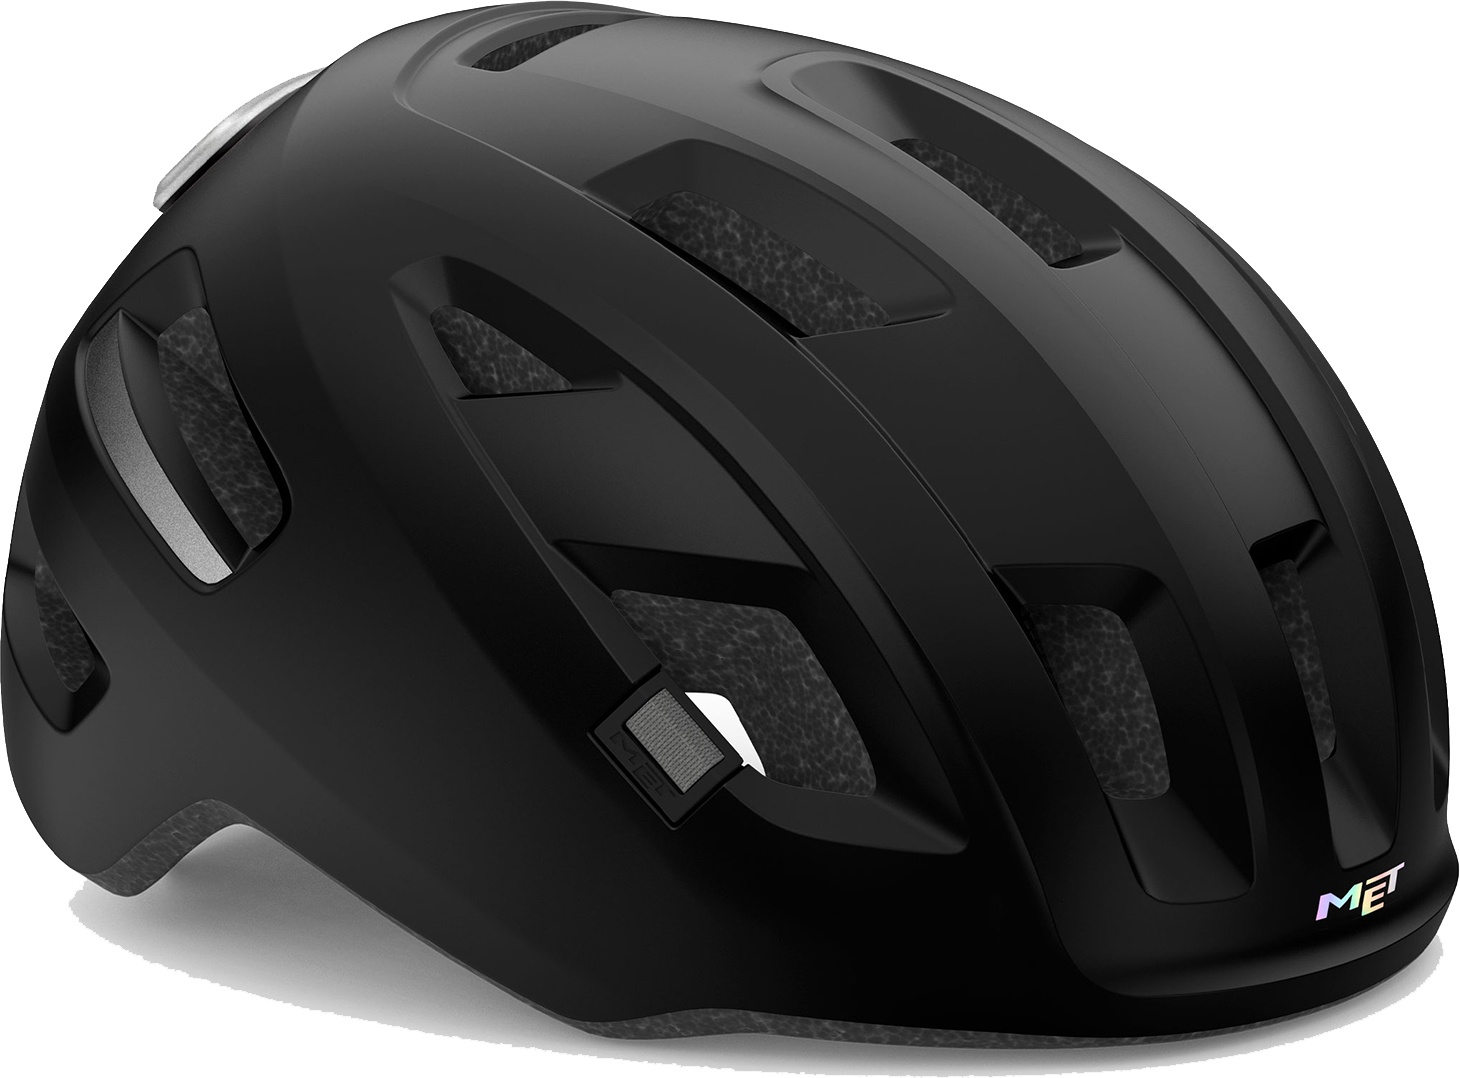 Beklædning - Cykelhjelme - MET Helmet E-Mob - Sort (elcykel hjelm)